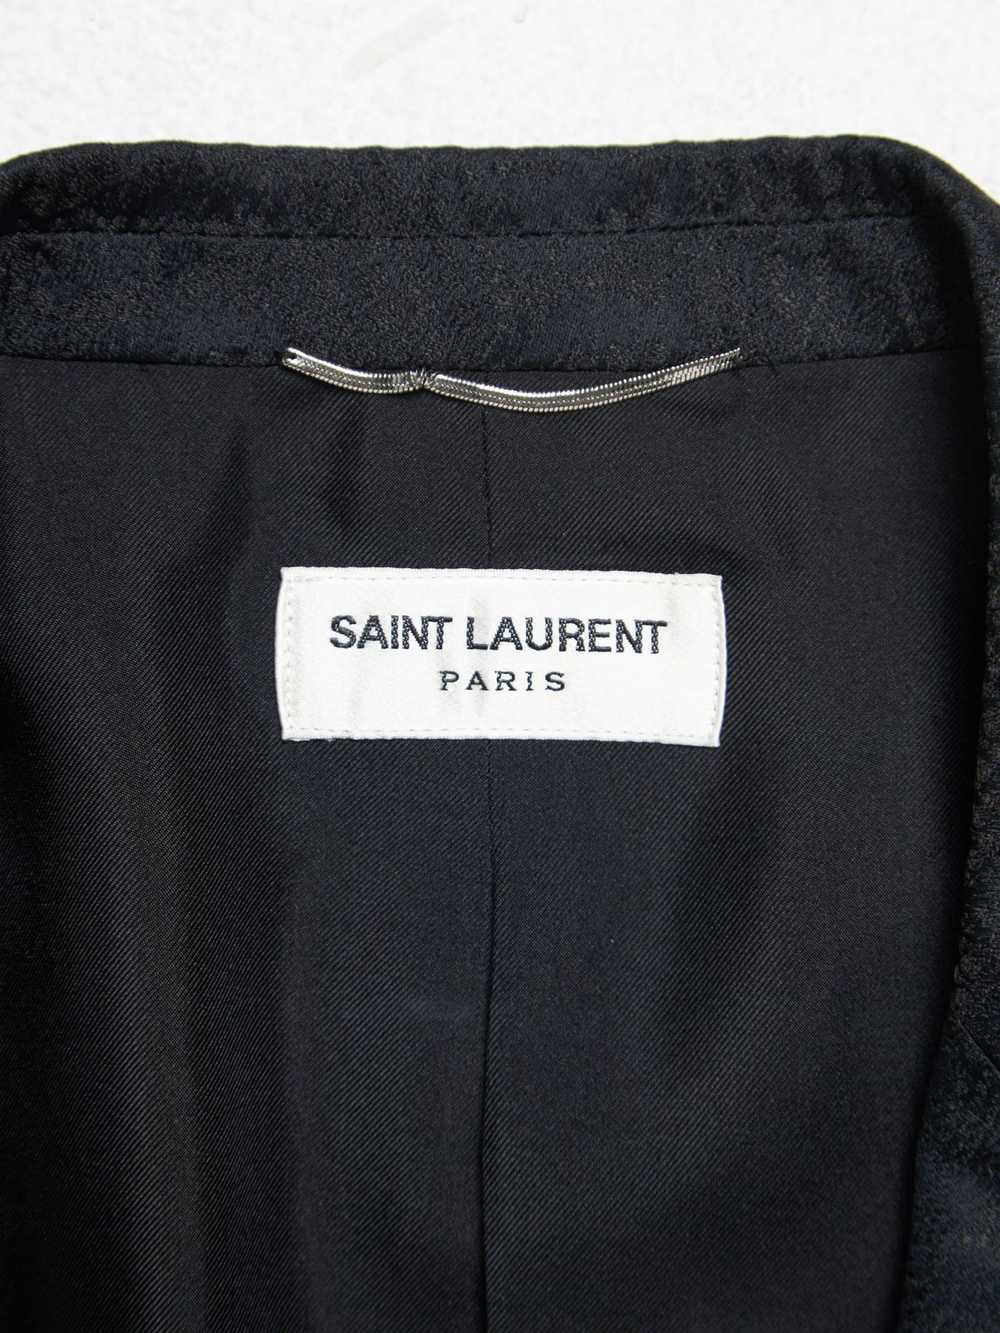 Saint Laurent Paris S/S16 Black Python Embroidere… - image 4